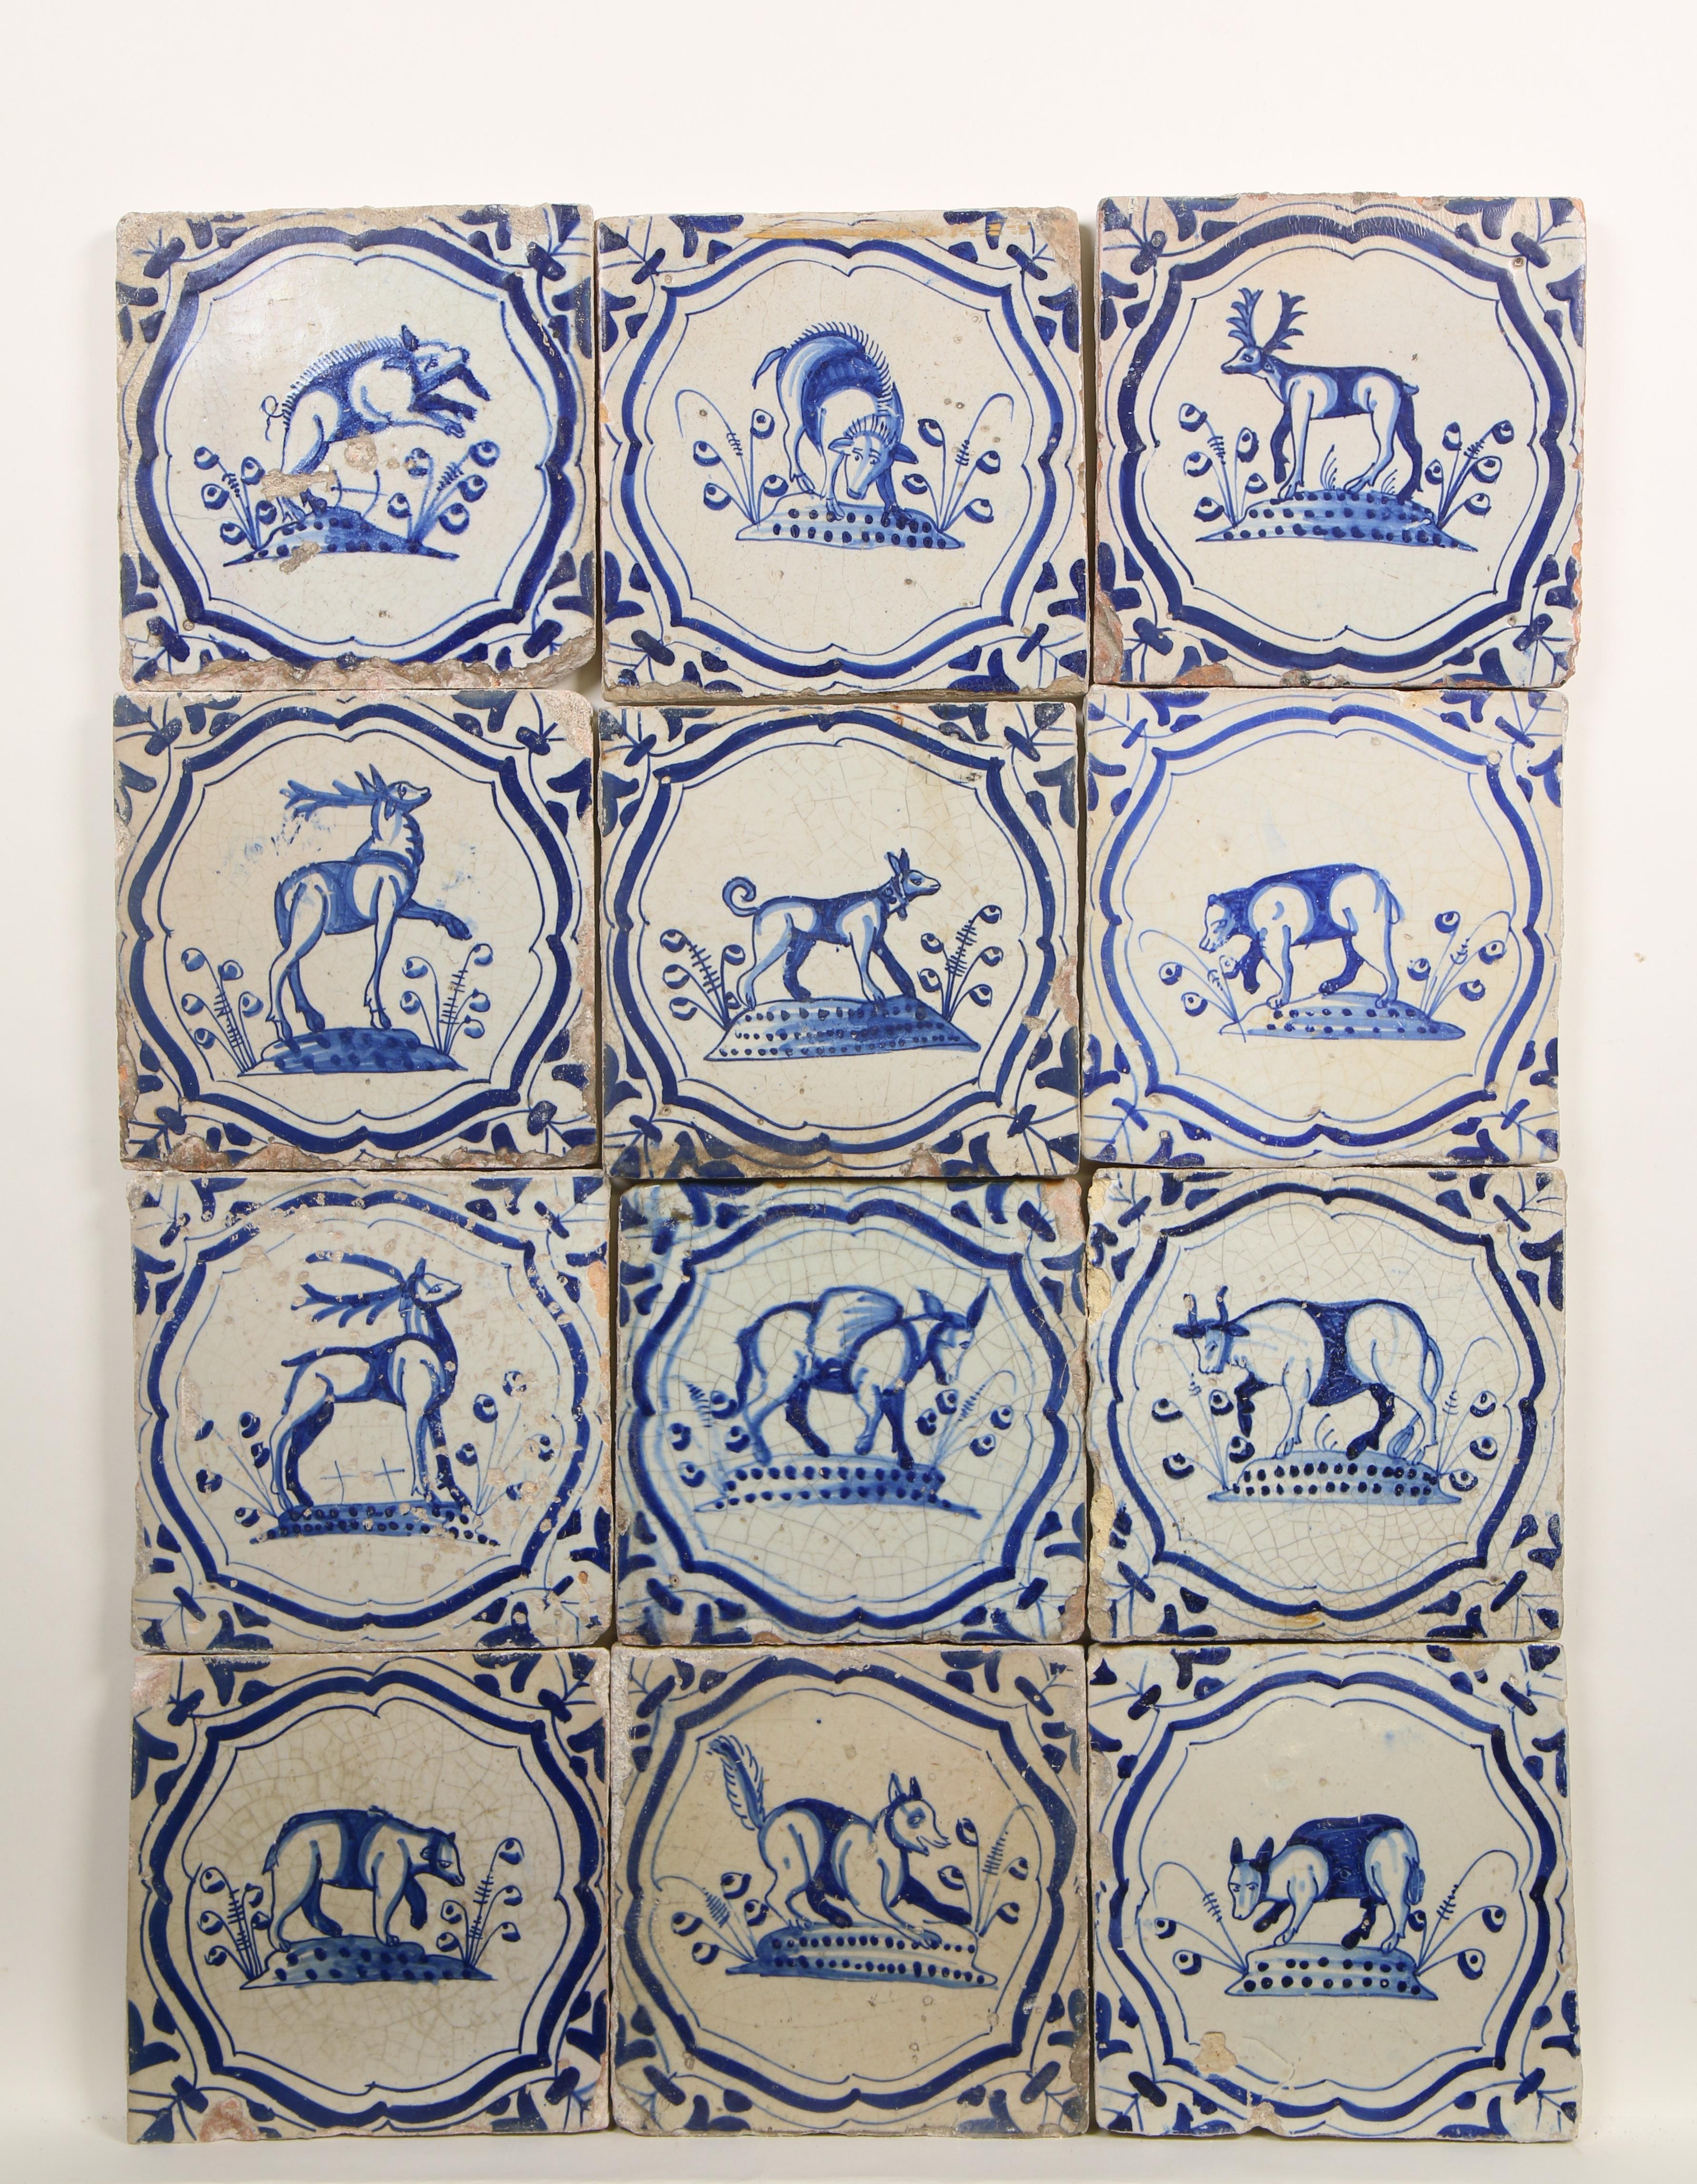 Twaalf blauw aardewerk dierendecor tegels, 1625-1650;